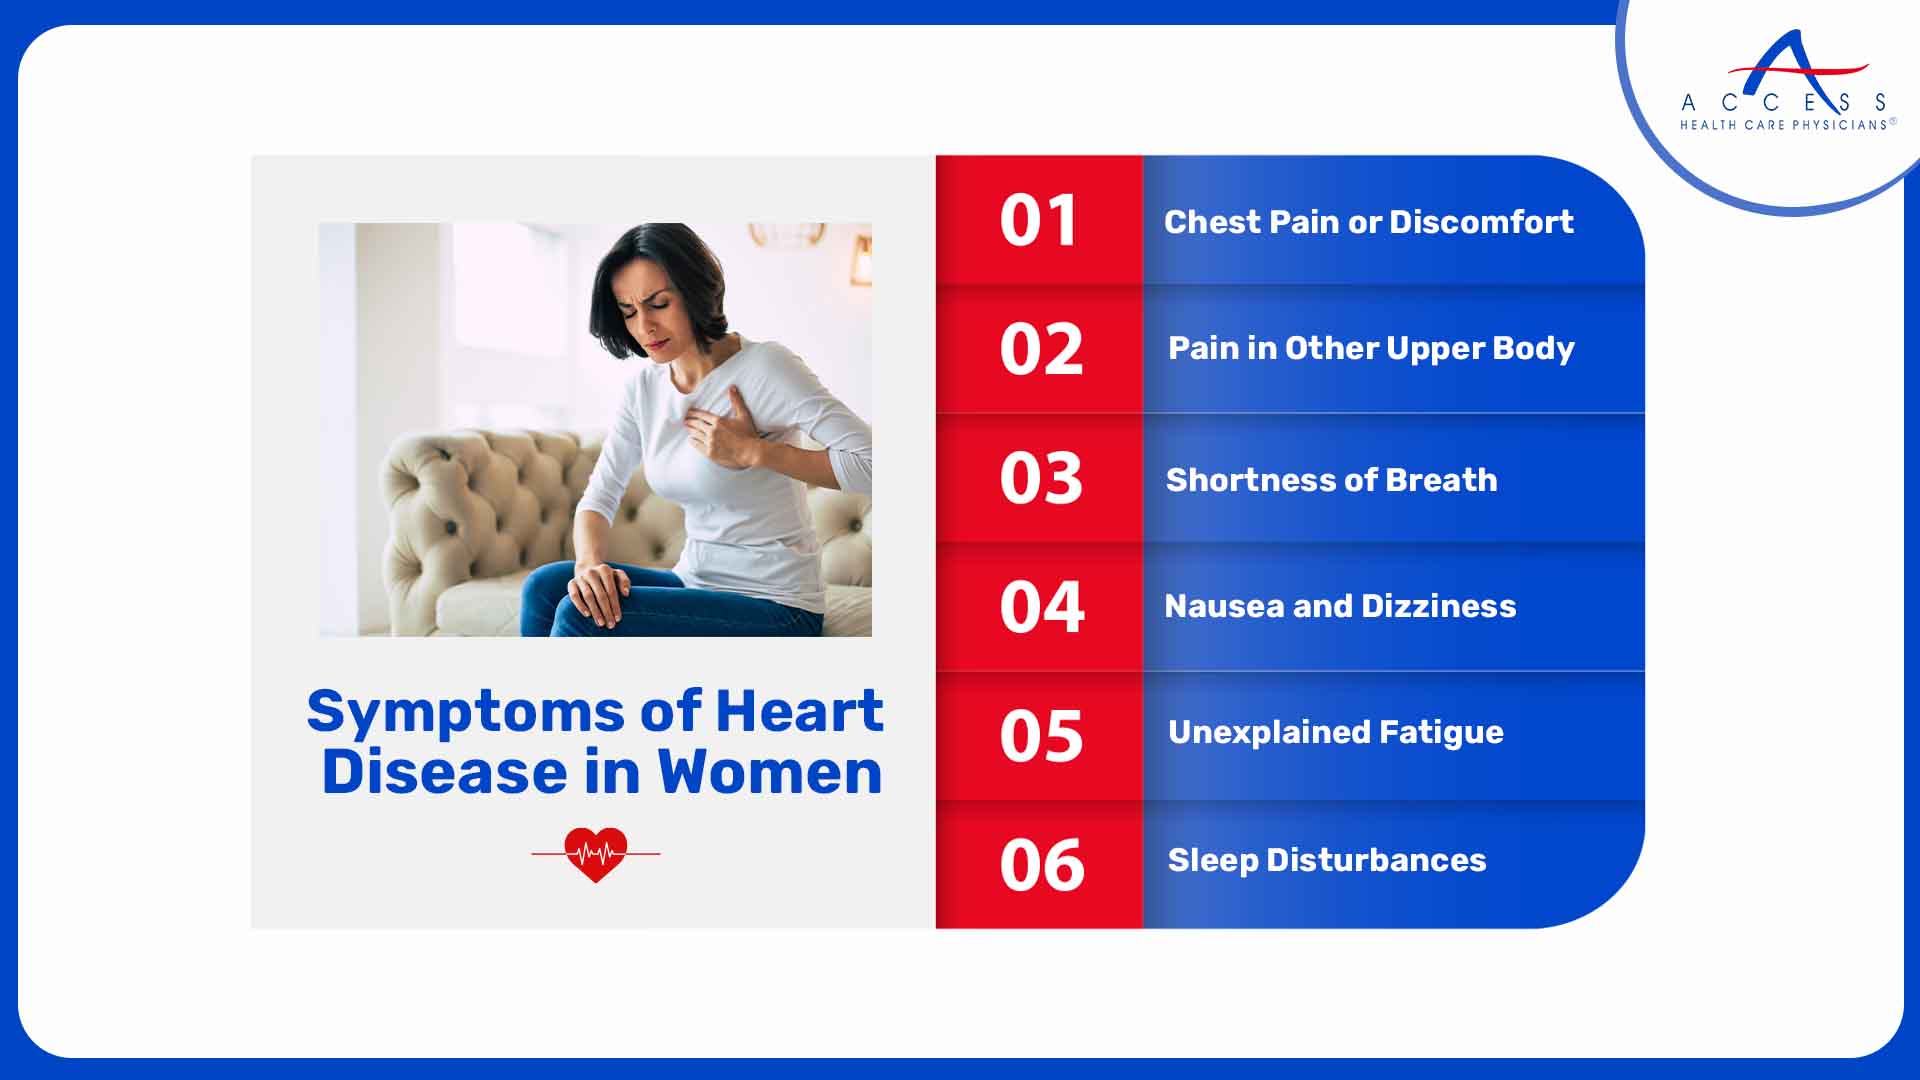 Symptoms of Heart Disease in Women